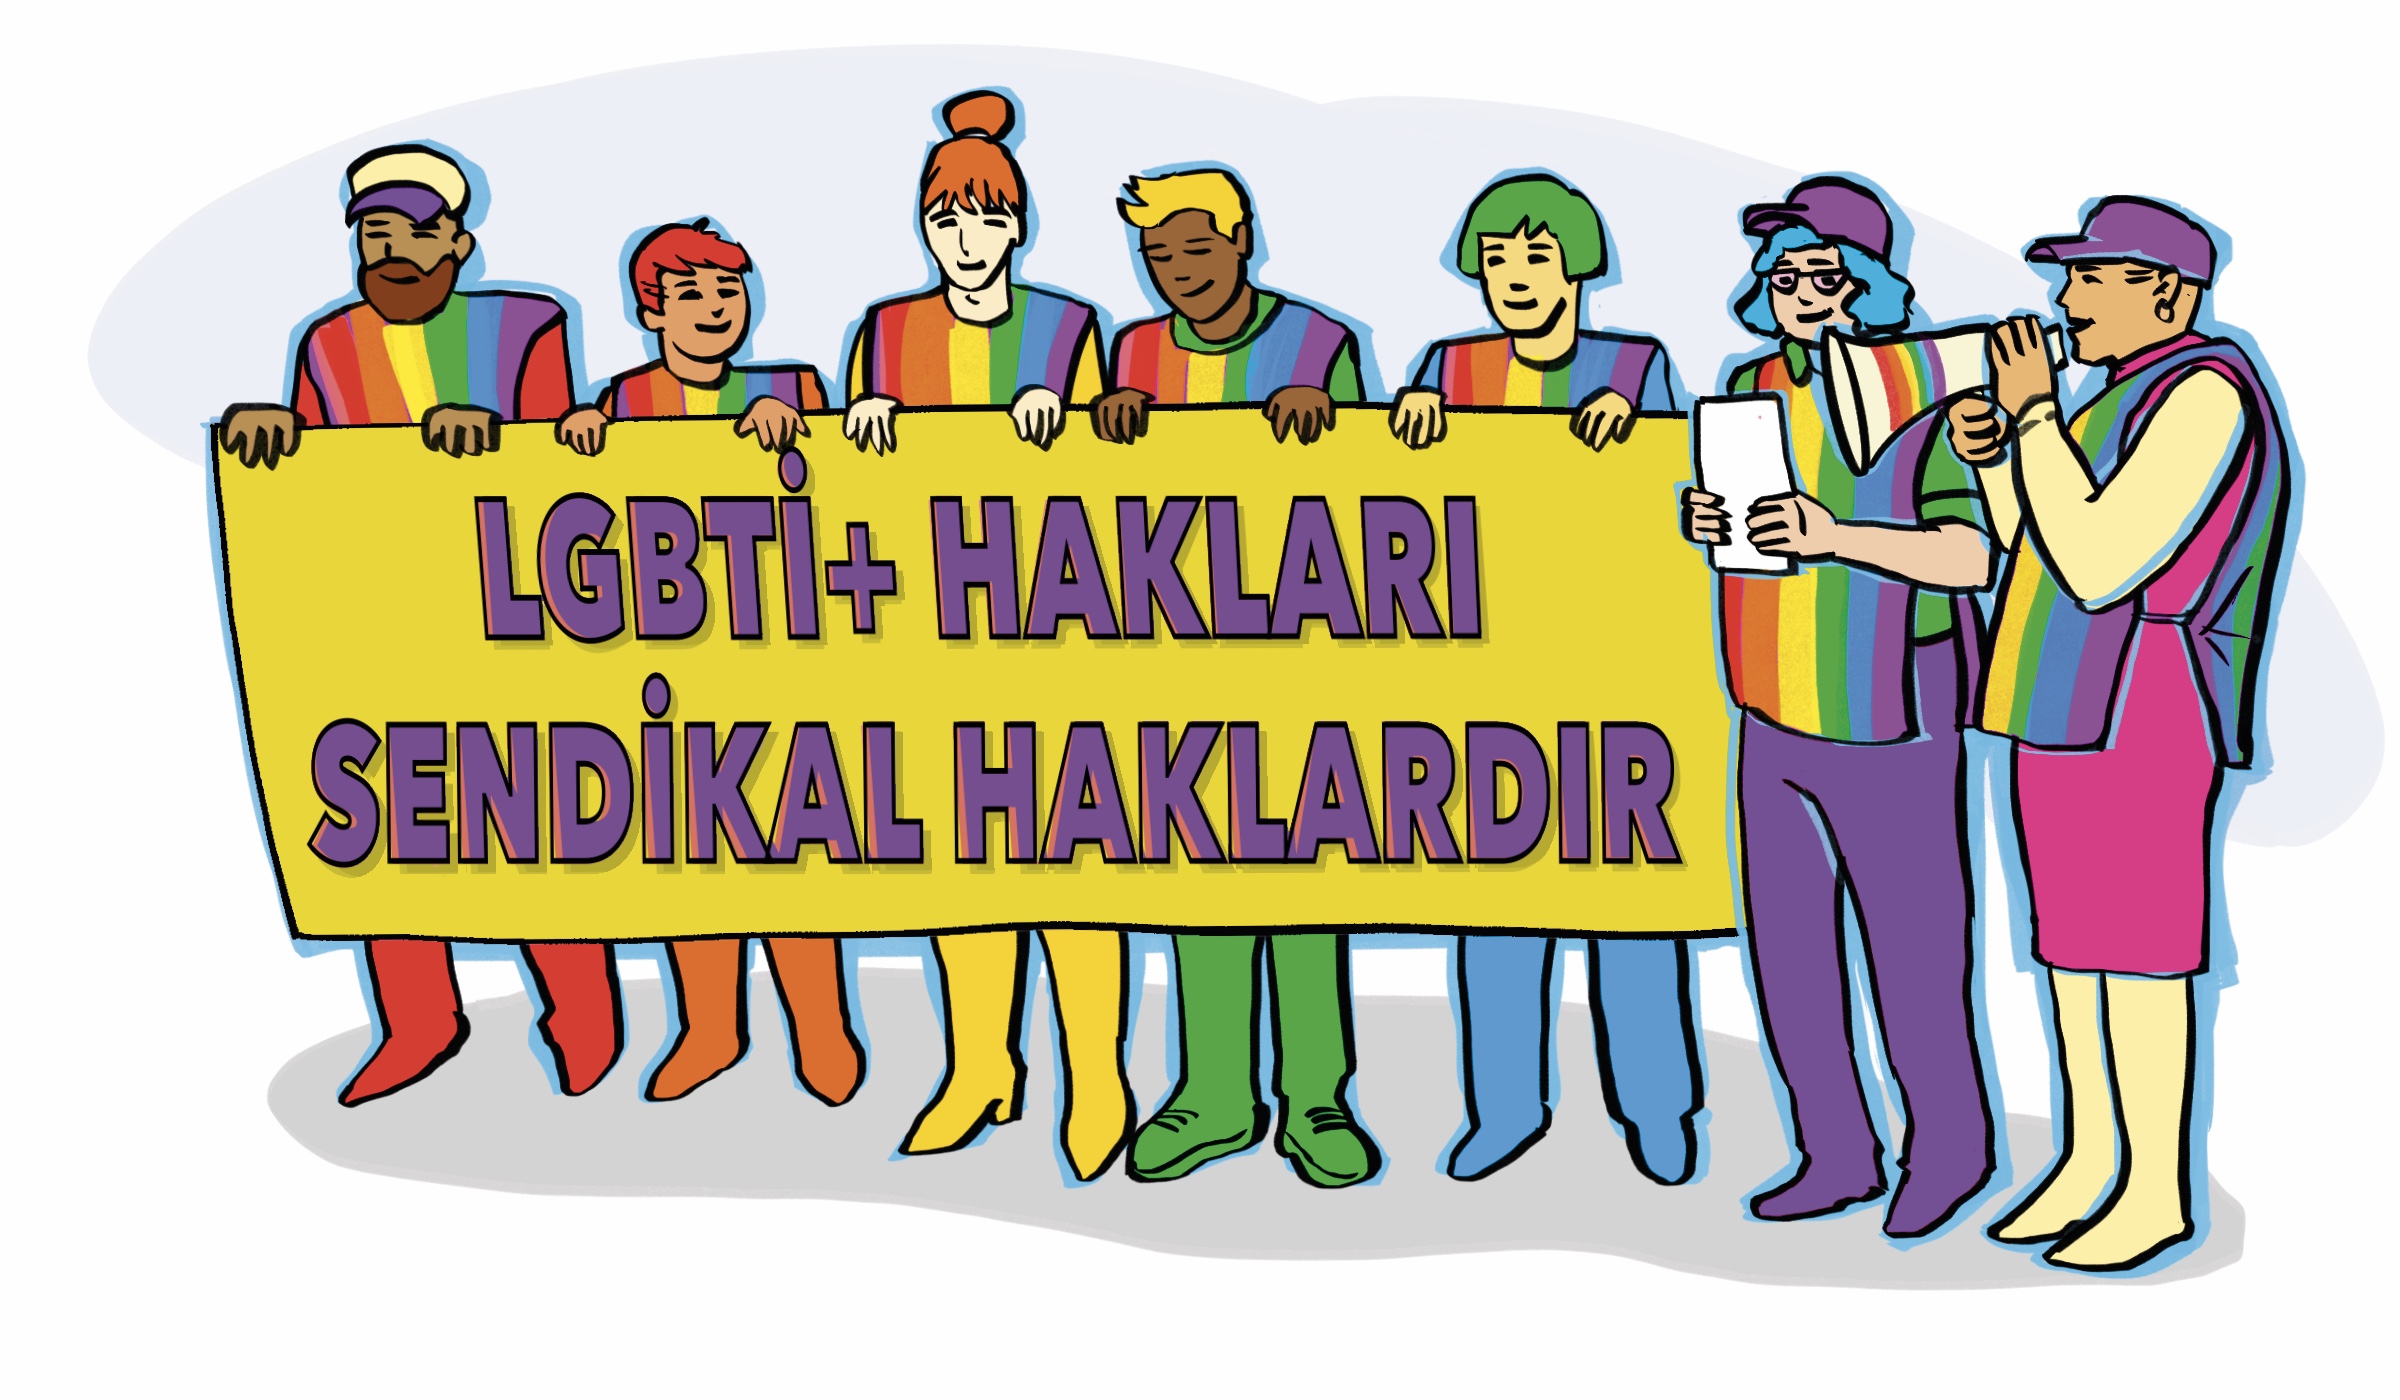 Pembe Yakalılar’dan LGBTİ+ sendika hakları atölyesi: “Sendikal Haklarımızı Konuşuyoruz!” | Kaos GL - LGBTİ+ Haber Portalı